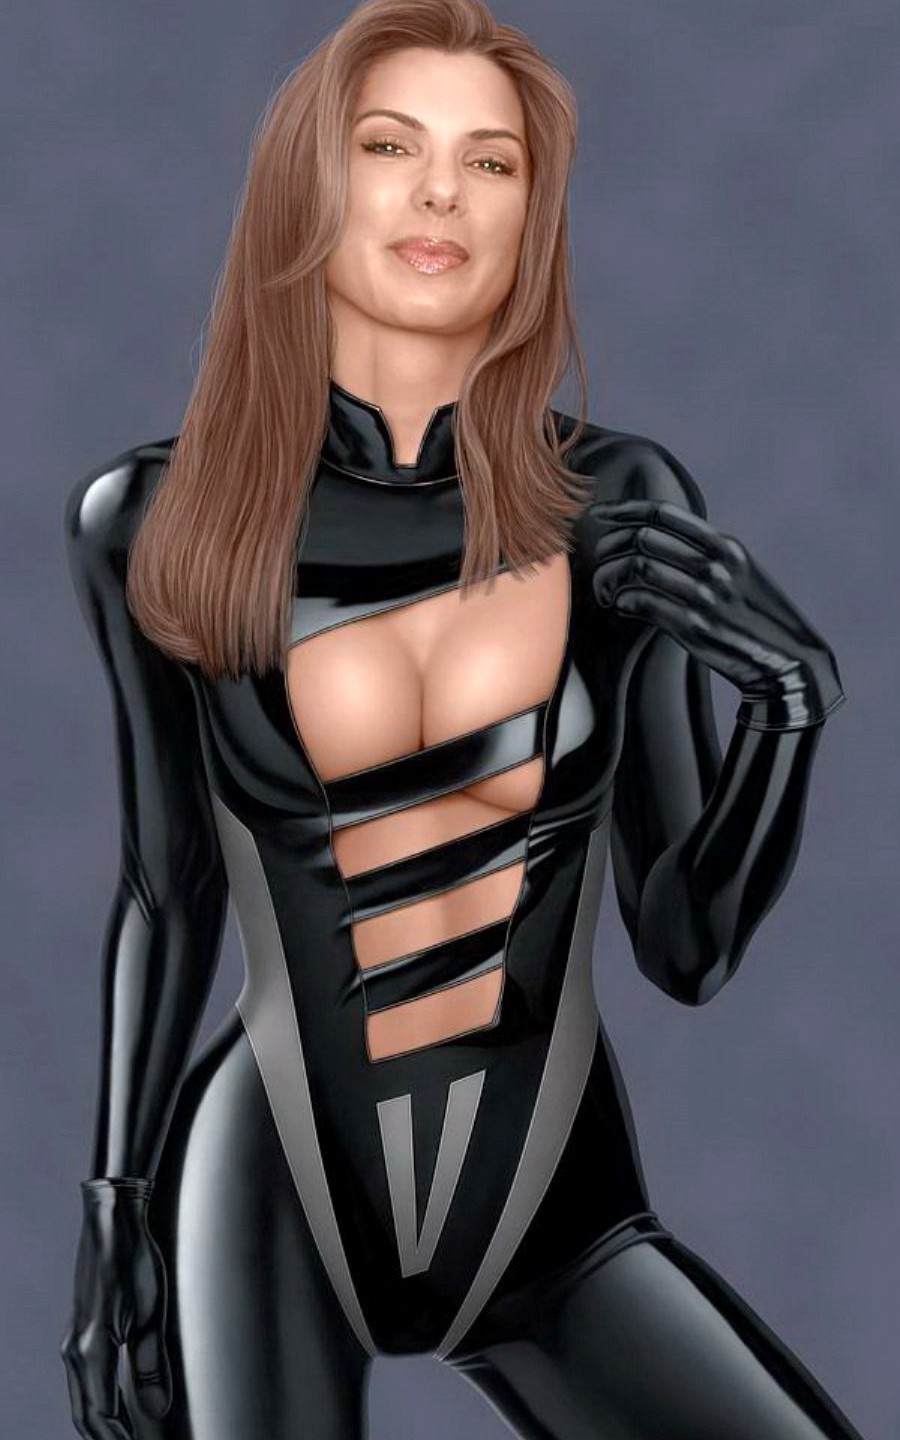 Download HQ Skinny suit of black latex Sandra Bullock wallpaper / 900x1440